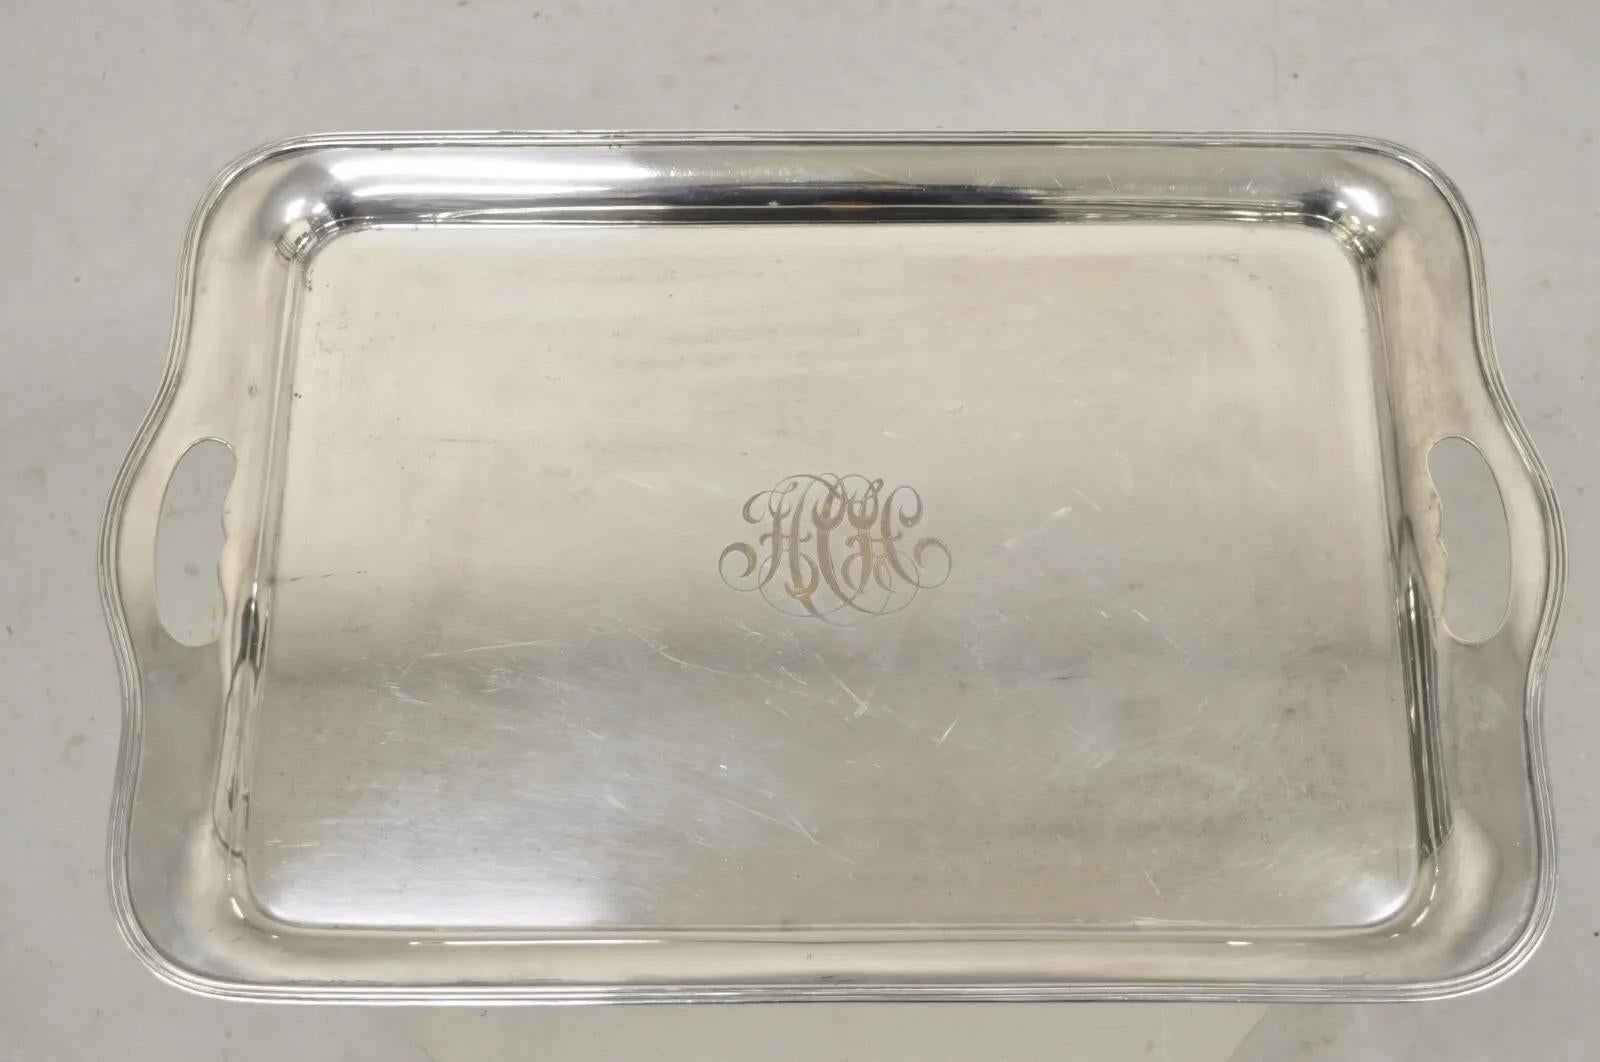 Antique GM Co English Edwardian Silver Plated Twin Handle Serving Platter Tray. Monogramme illisible au centre, poinçon d'origine, très beau plateau ancien. Circa Early 1900s. Dimensions : 1